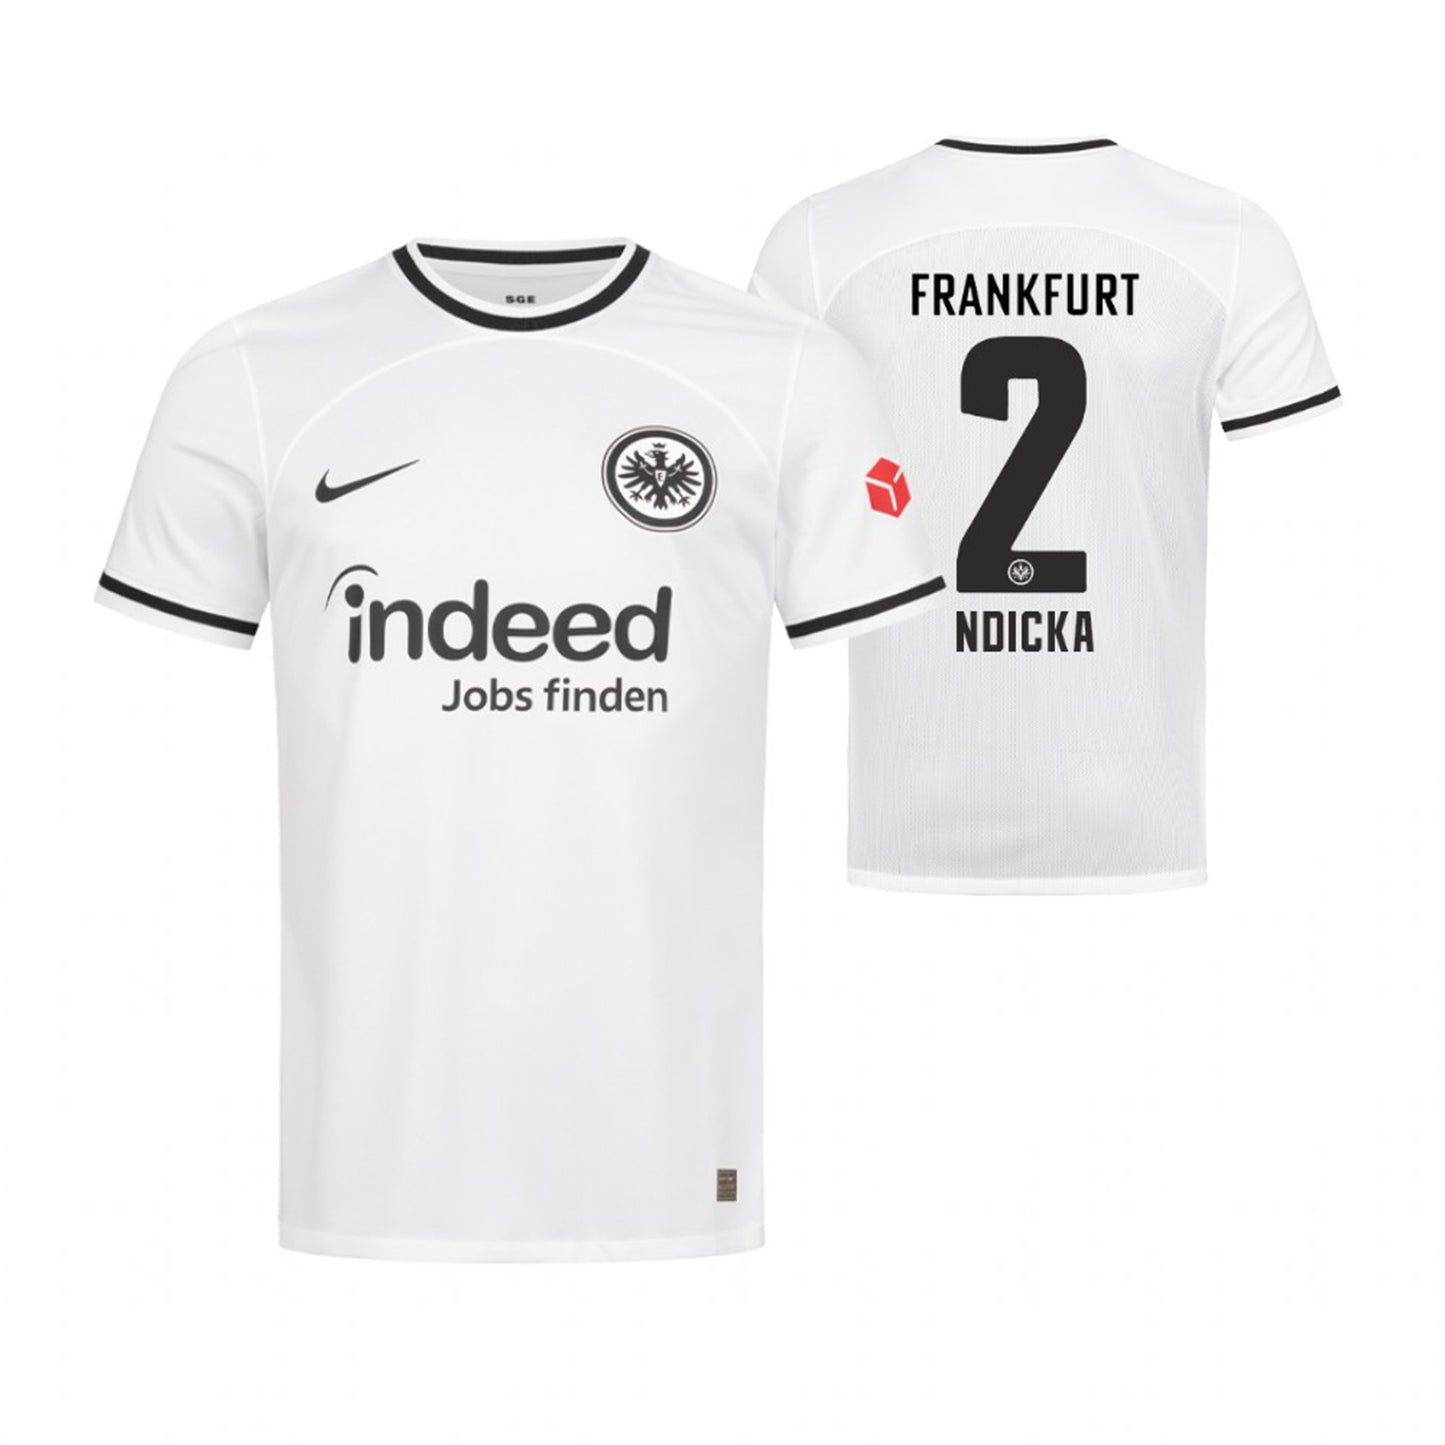 Evan Ndicka Eintracht Frankfurt 2 Jersey